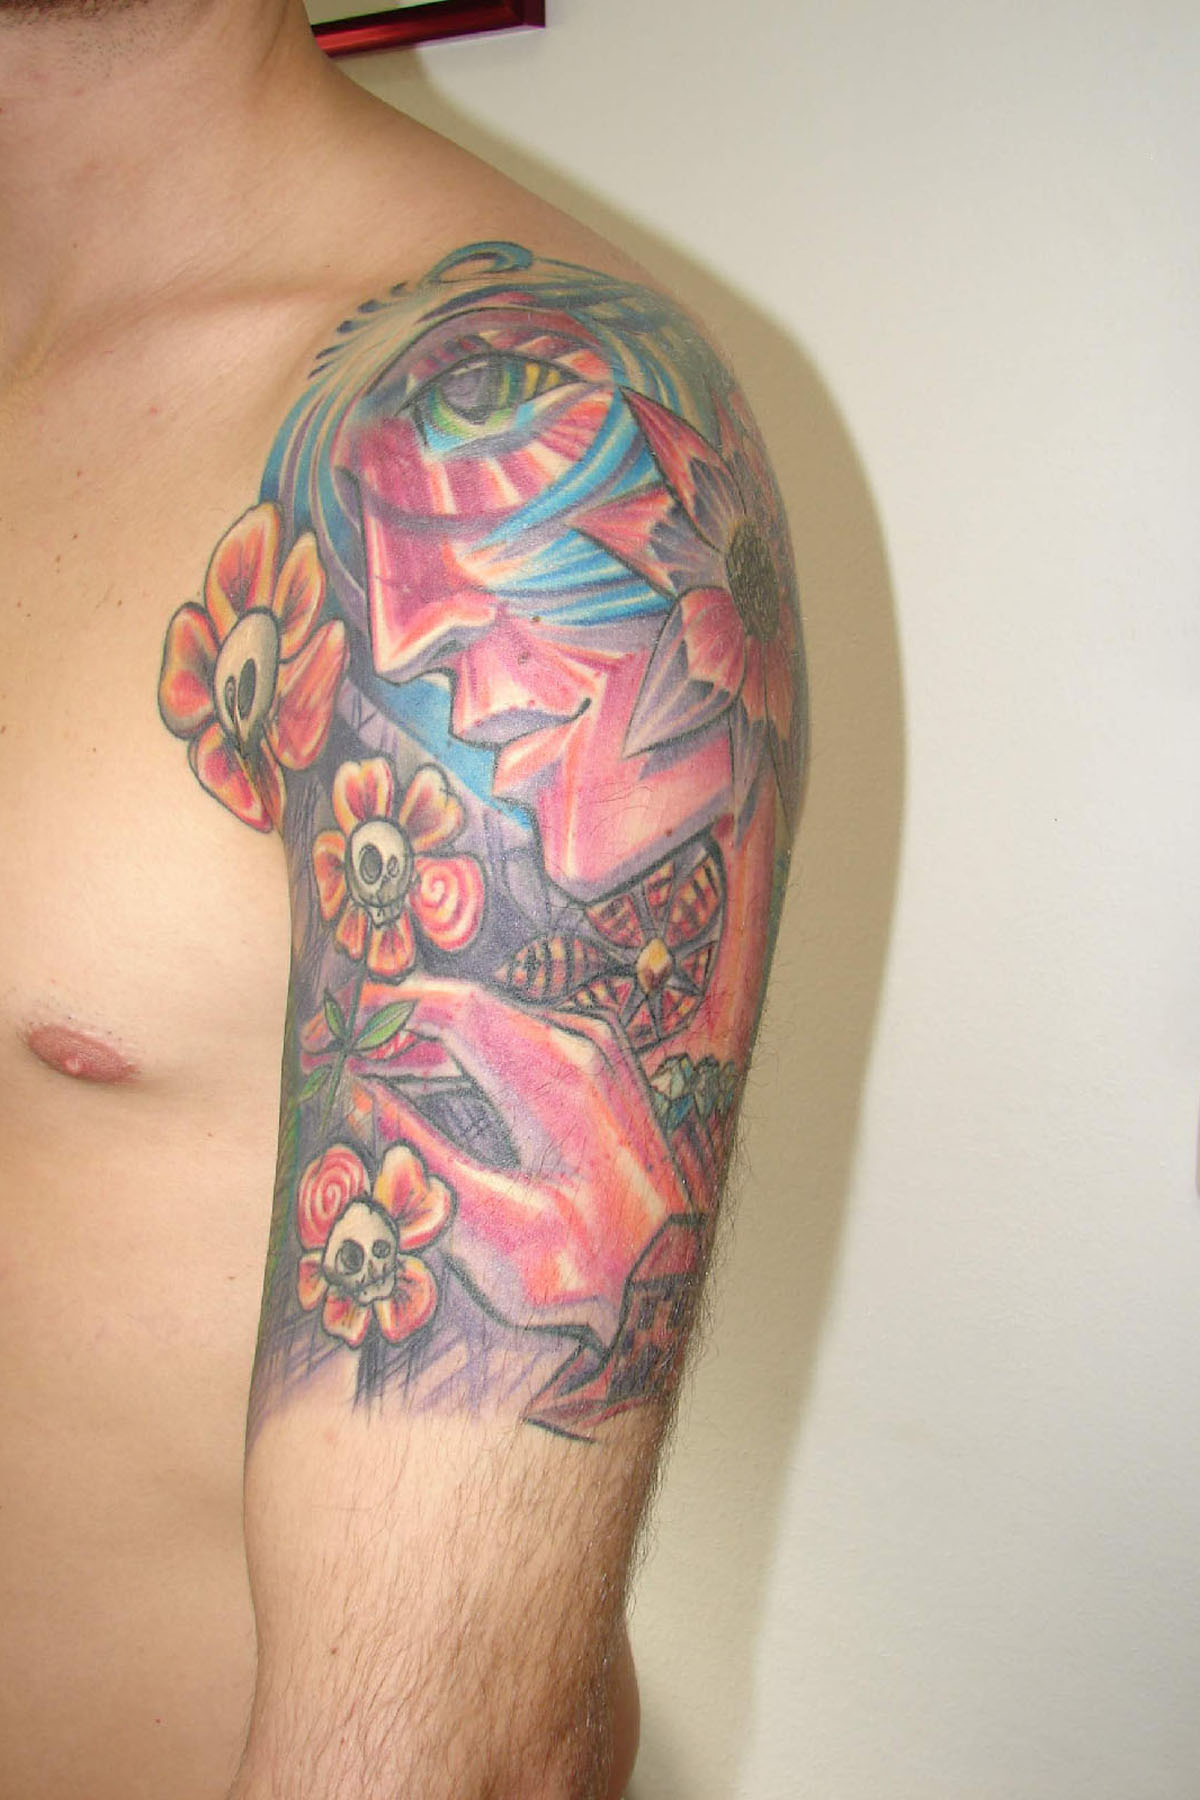 Tattooentfernung eines bunten Tattoos am Oberarm vor der Behandlung